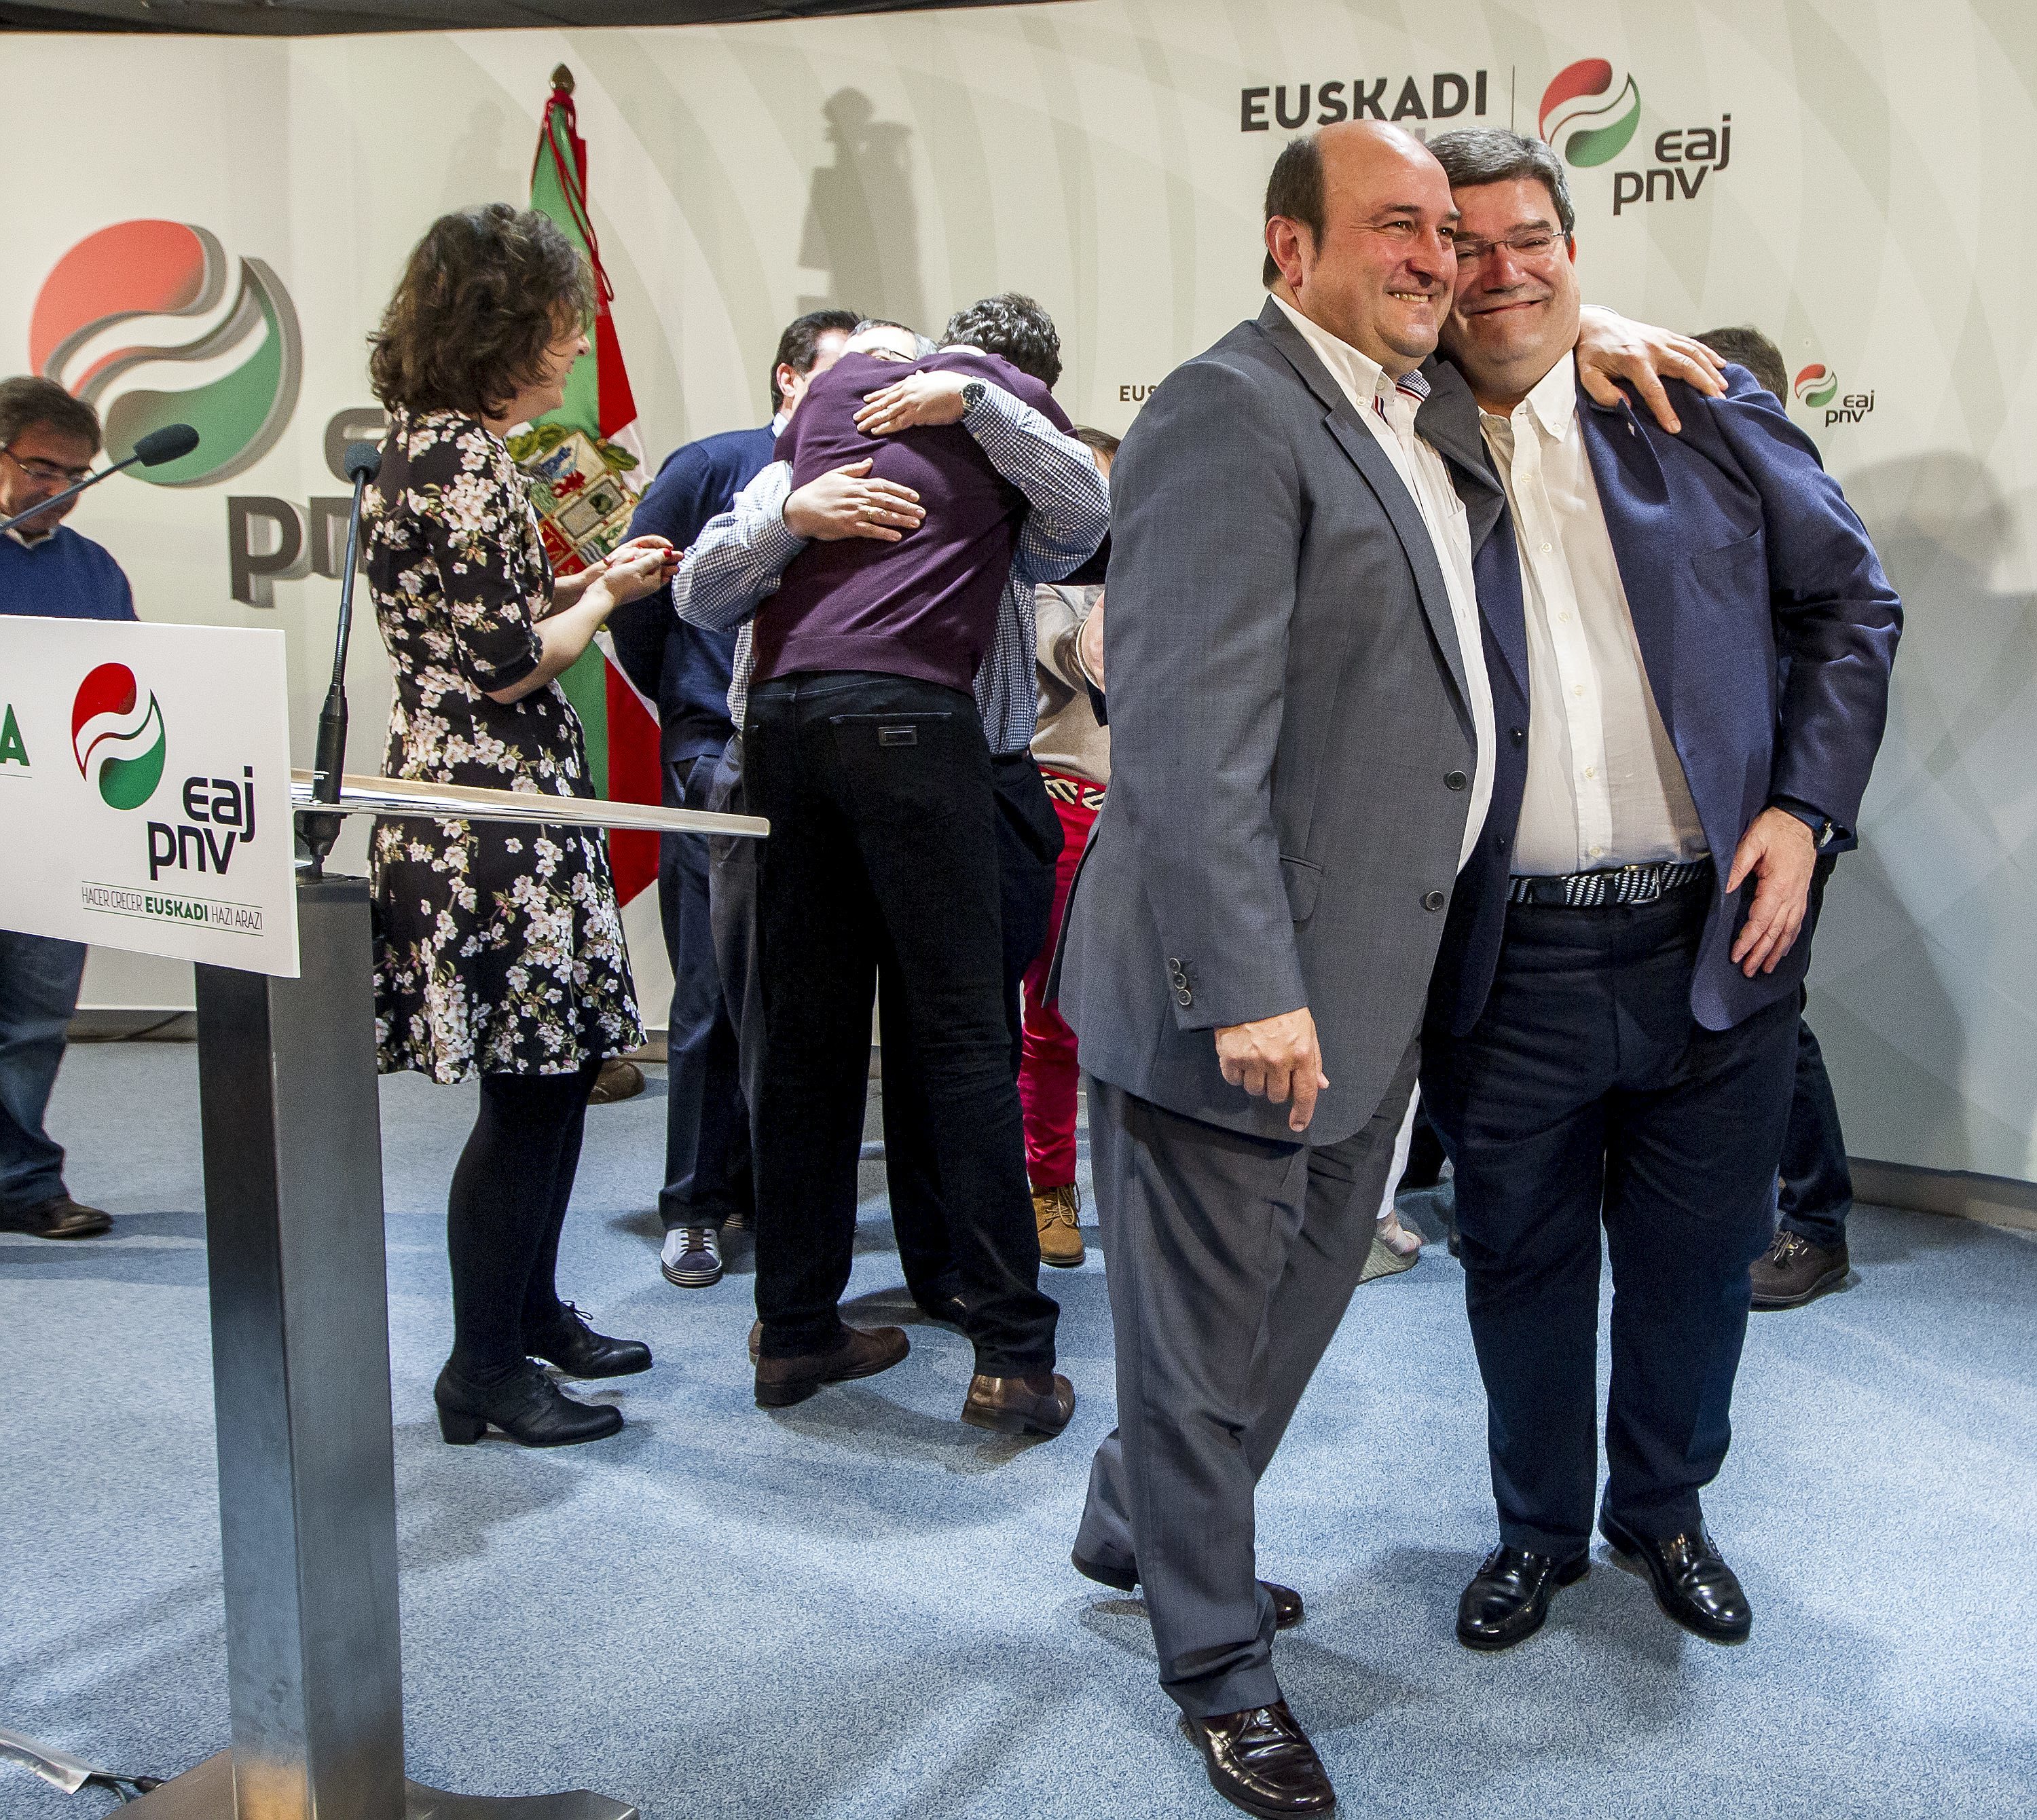 El presidente del PNV Andoni Ortuzar sonre junto al alcalde de Bilbao Juan Mari Aburto en la sede de Sabin Etxea.